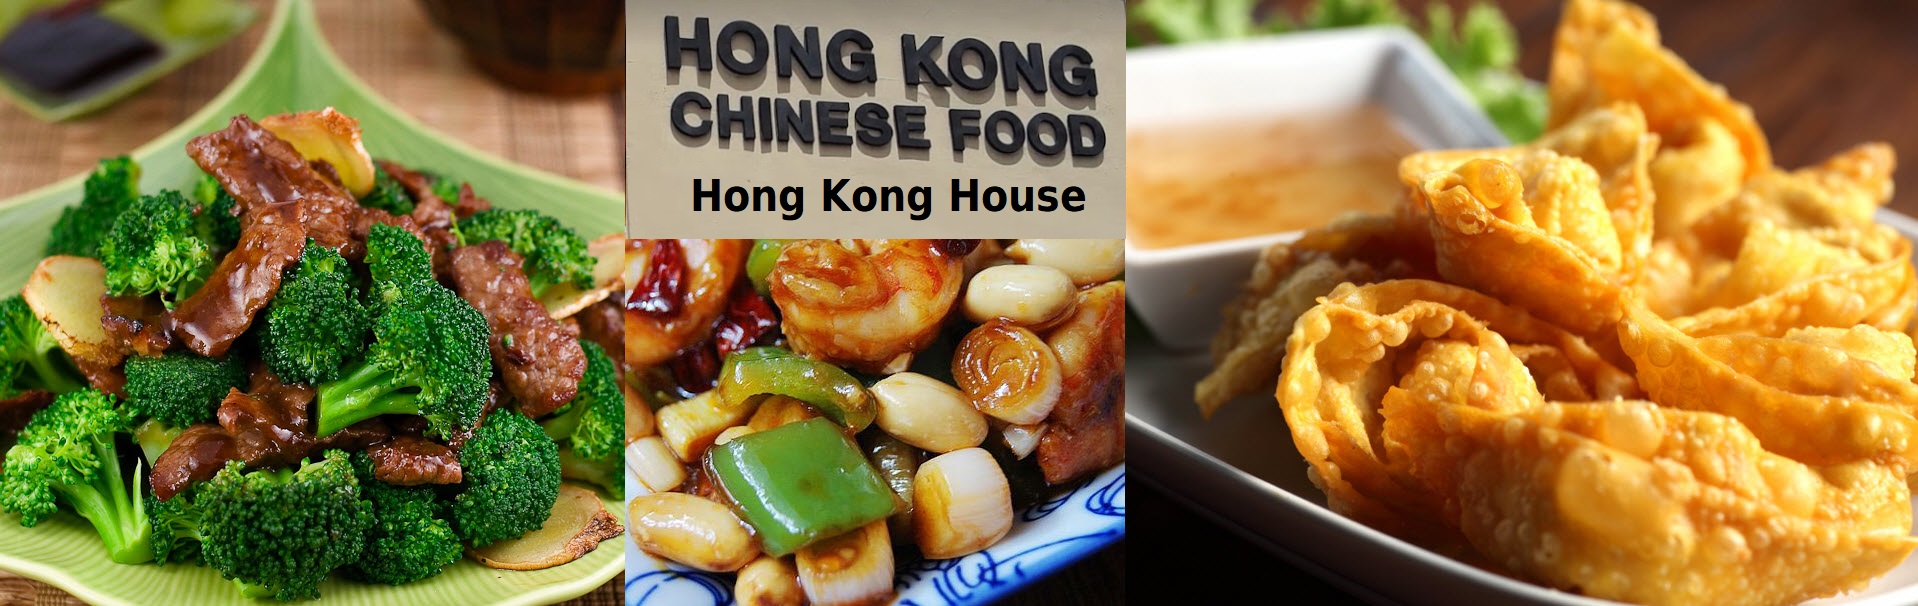 slank Bogholder nøjagtigt Hong Kong House - North Miami, FL | Order Online | Chinese Food